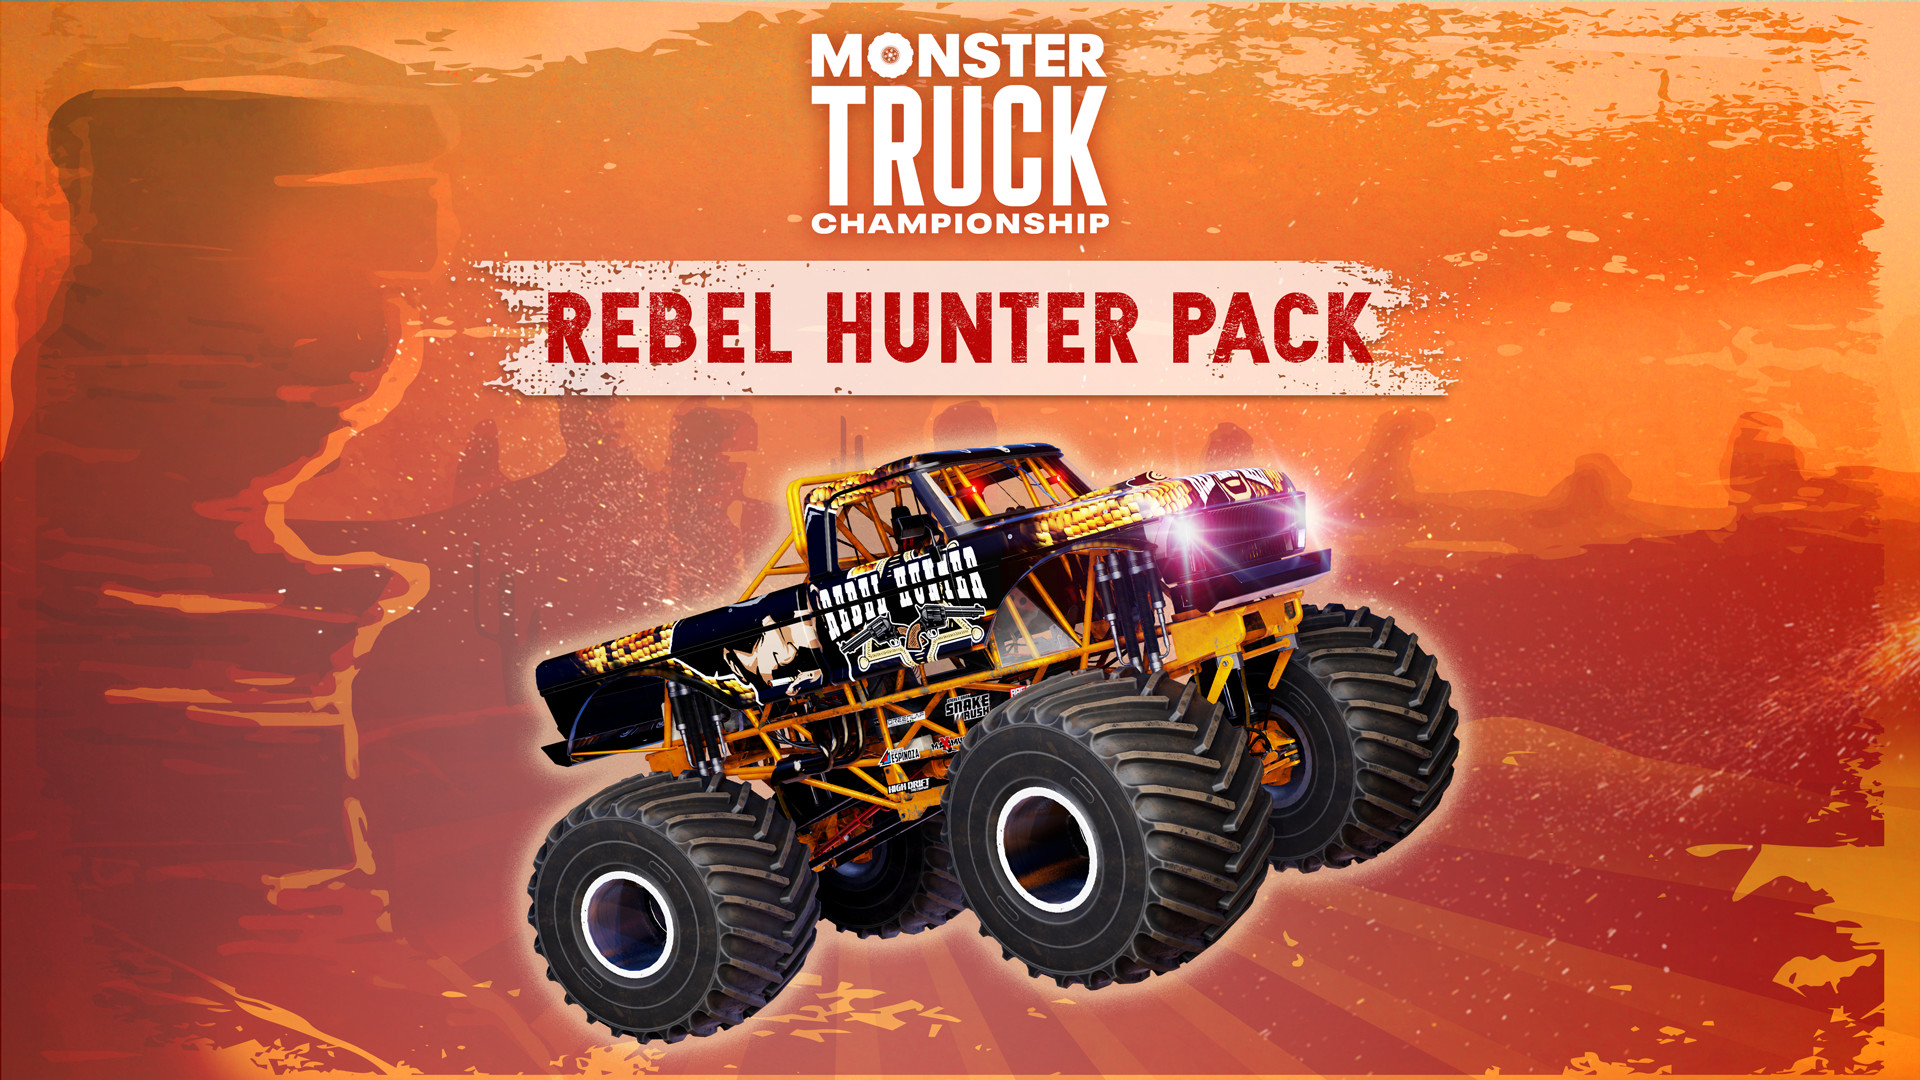 Monster Truck Championship - Rebel Hunter Pack DLC Steam CD Key, 10.16$